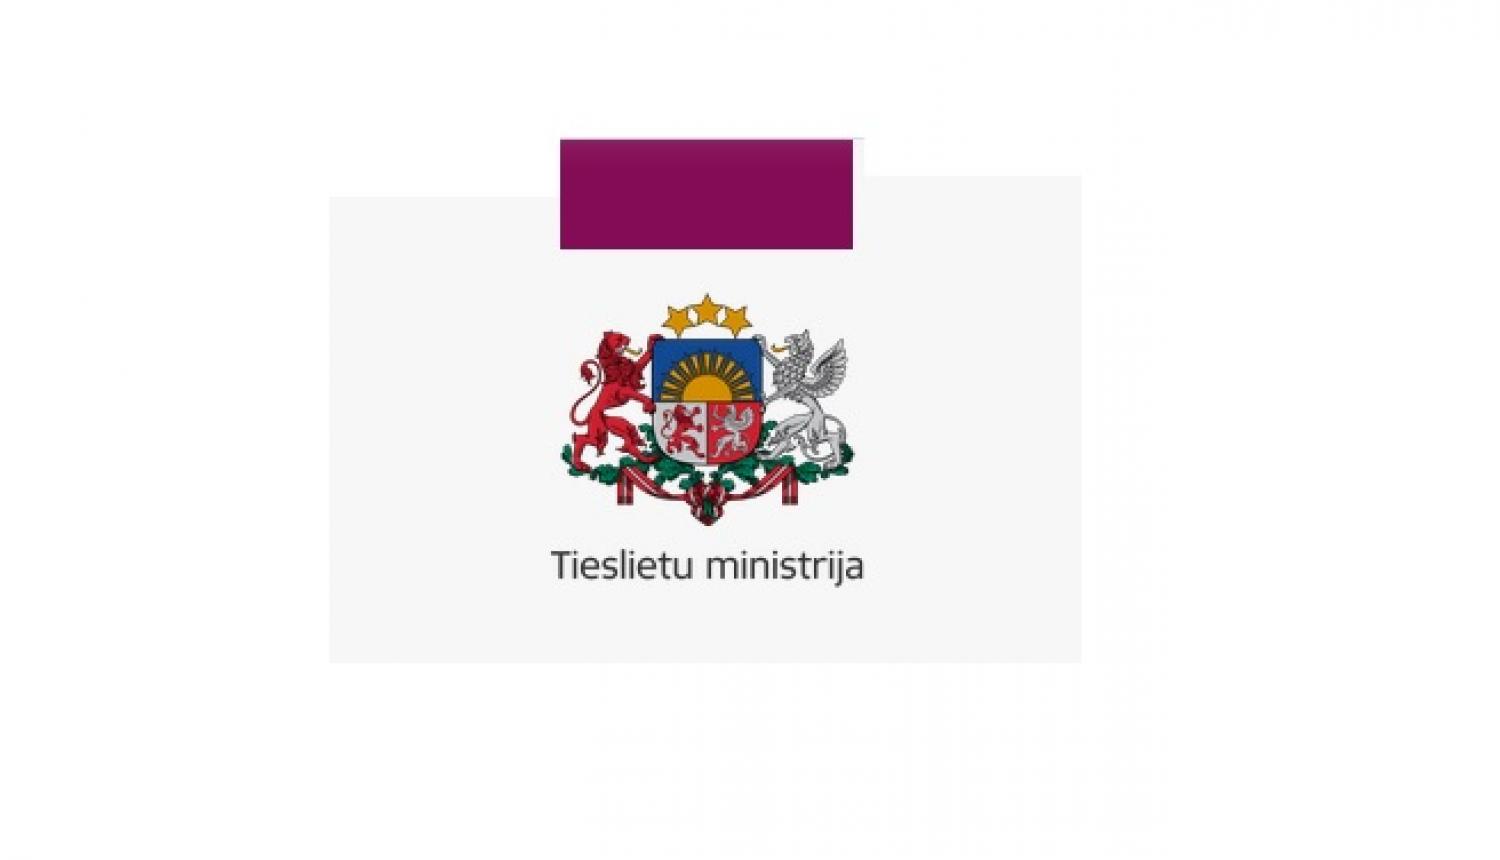 Tieslietu ministrijas logo